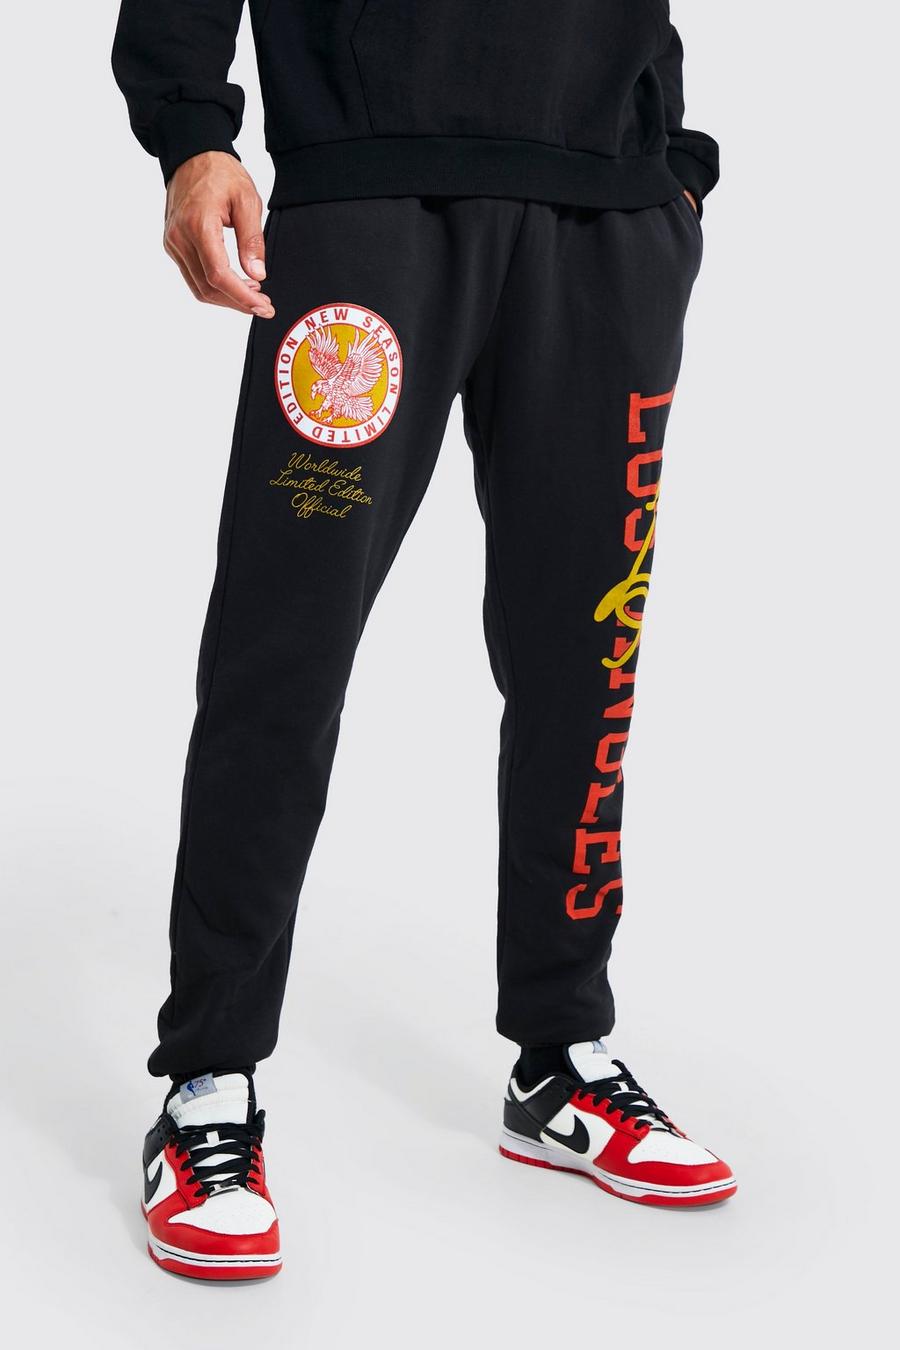 Pantalón deportivo Tall con estampado gráfico universitario de Los Angeles, Black negro image number 1